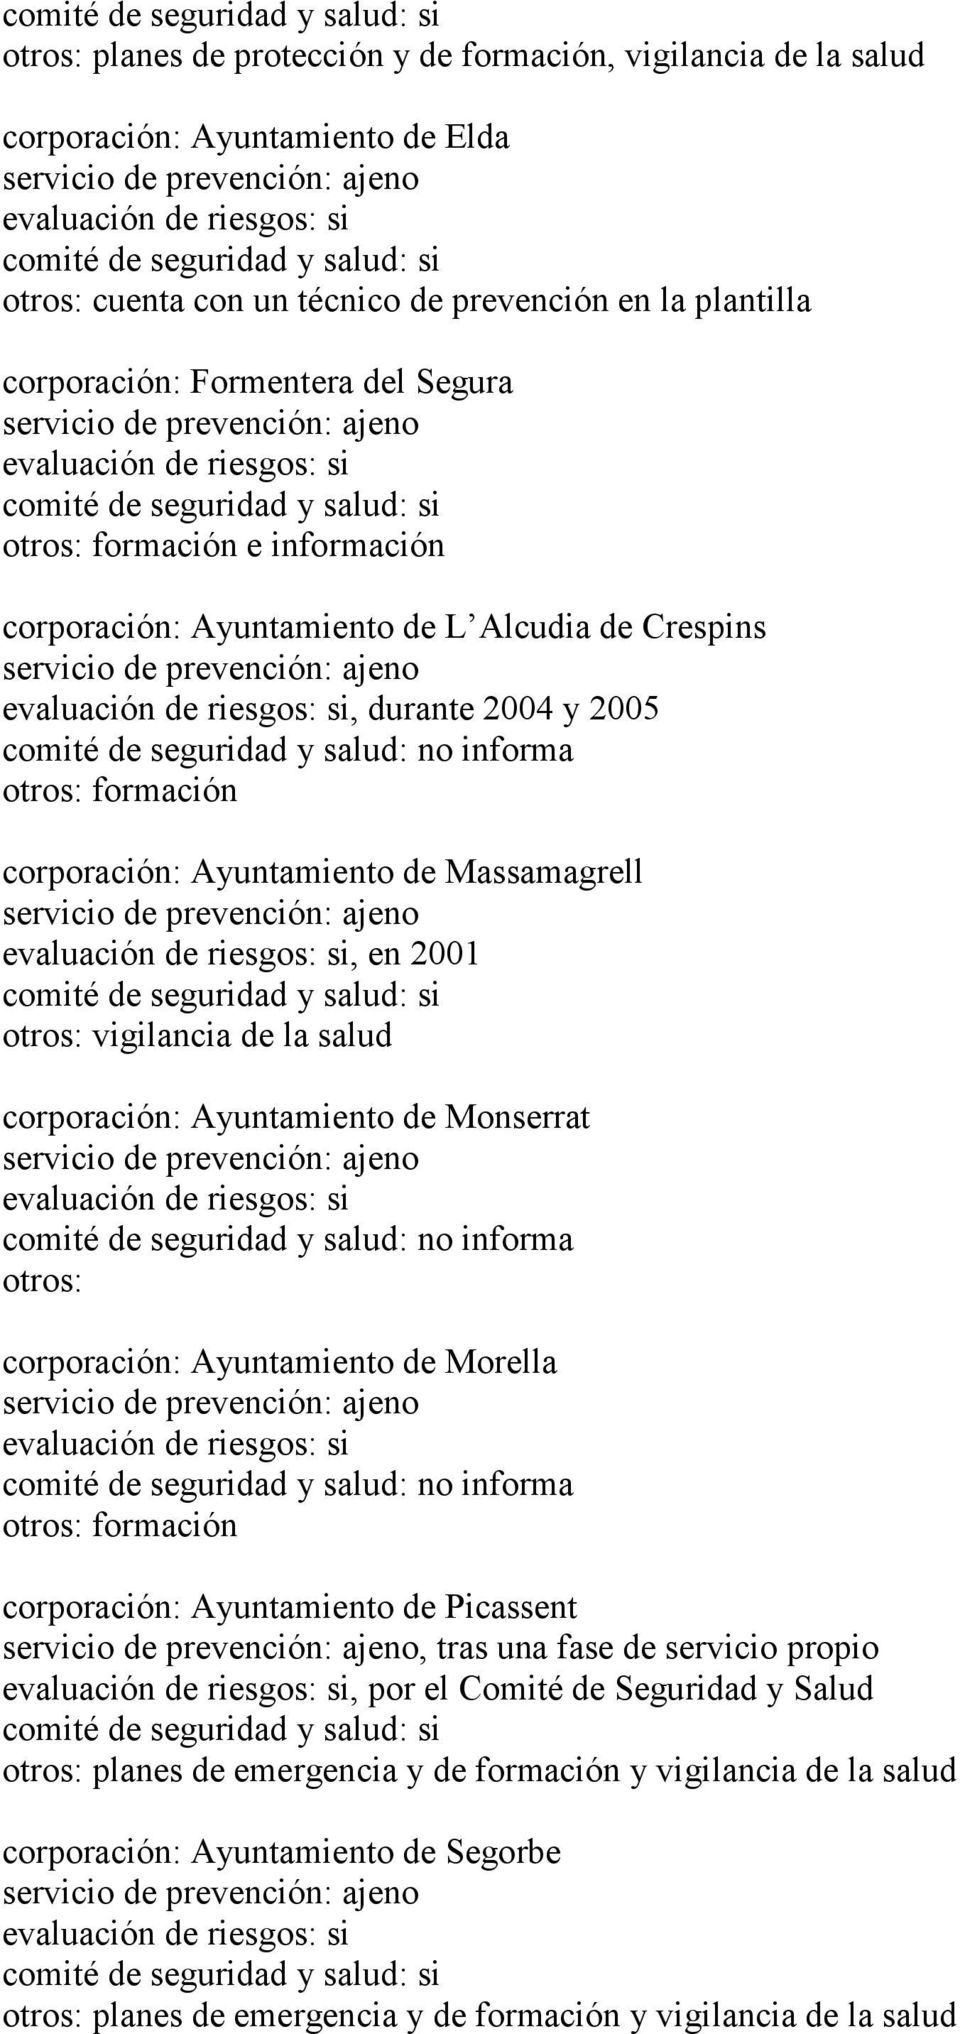 la salud corporación: Ayuntamiento de Monserrat corporación: Ayuntamiento de Morella formación corporación: Ayuntamiento de Picassent, tras una fase de servicio propio, por el